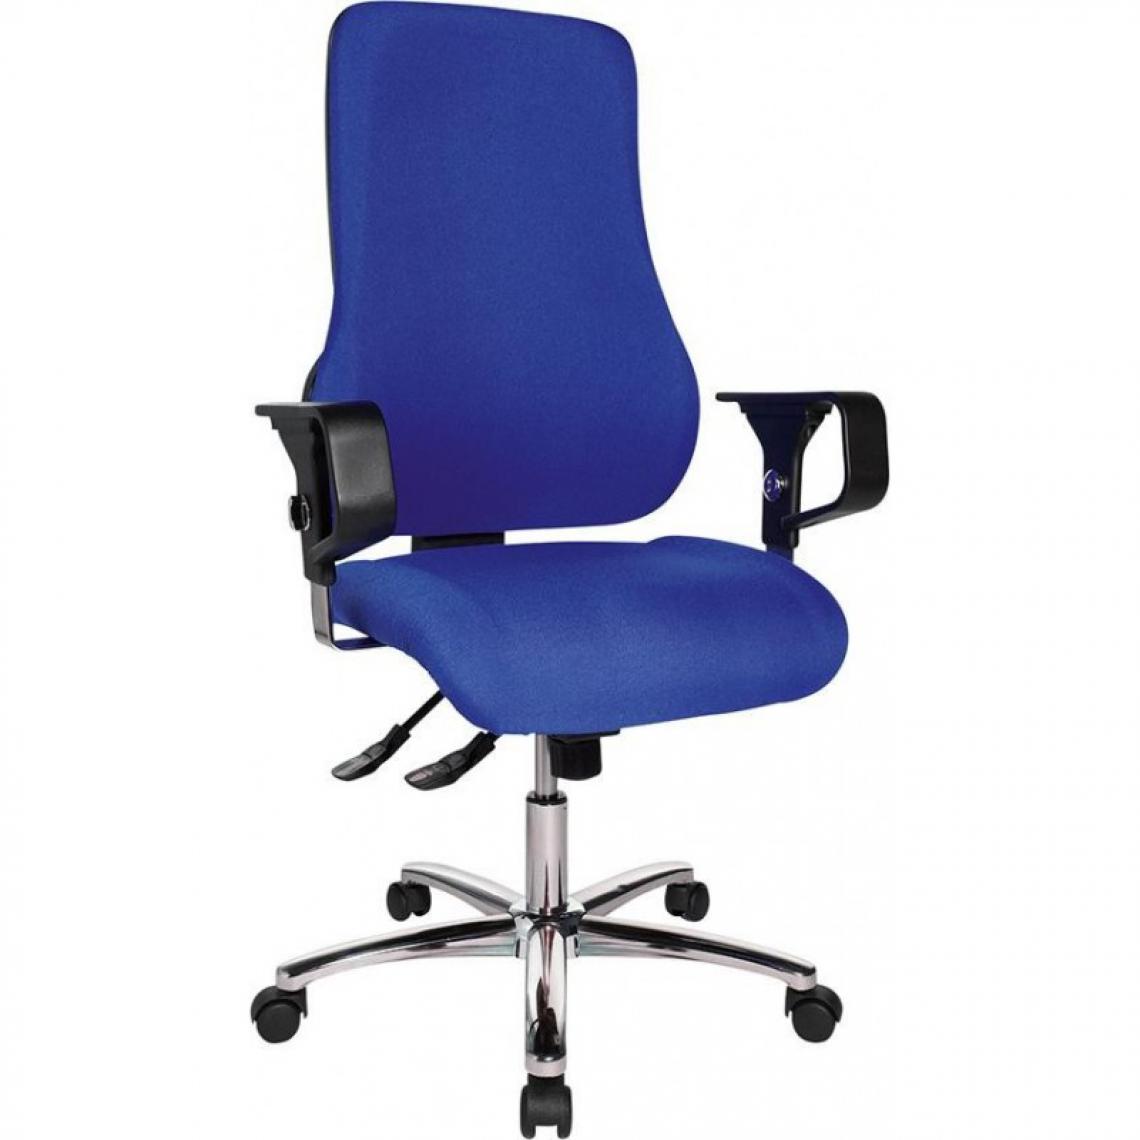 marque generique - Chaise bureau Sitness 55 bleu royal - Chaises